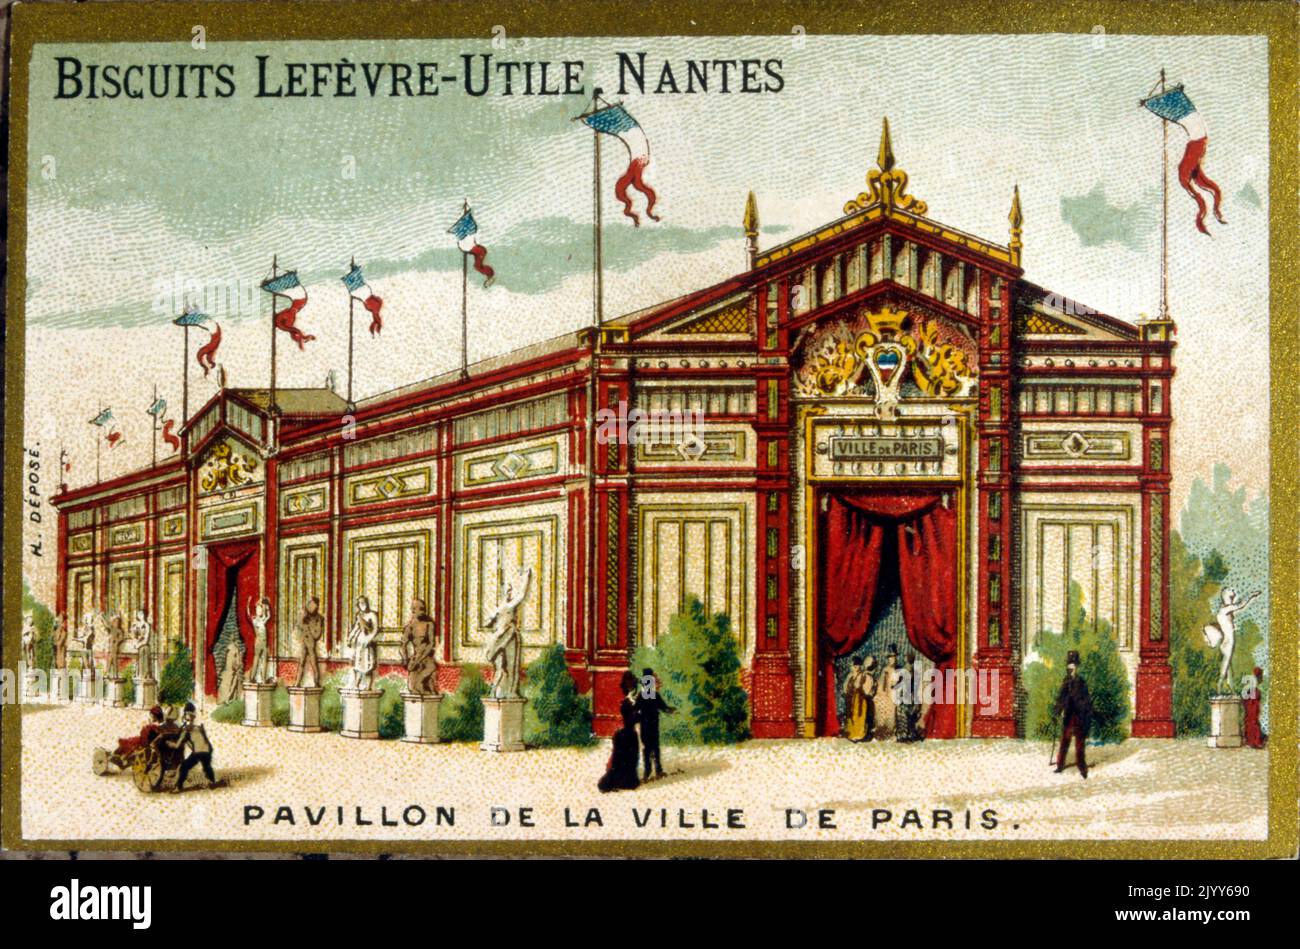 Image de l'usine de biscuit Lefevre-Utile à Nantes ; image commémorative du Pavillon de la ville de Paris. Banque D'Images